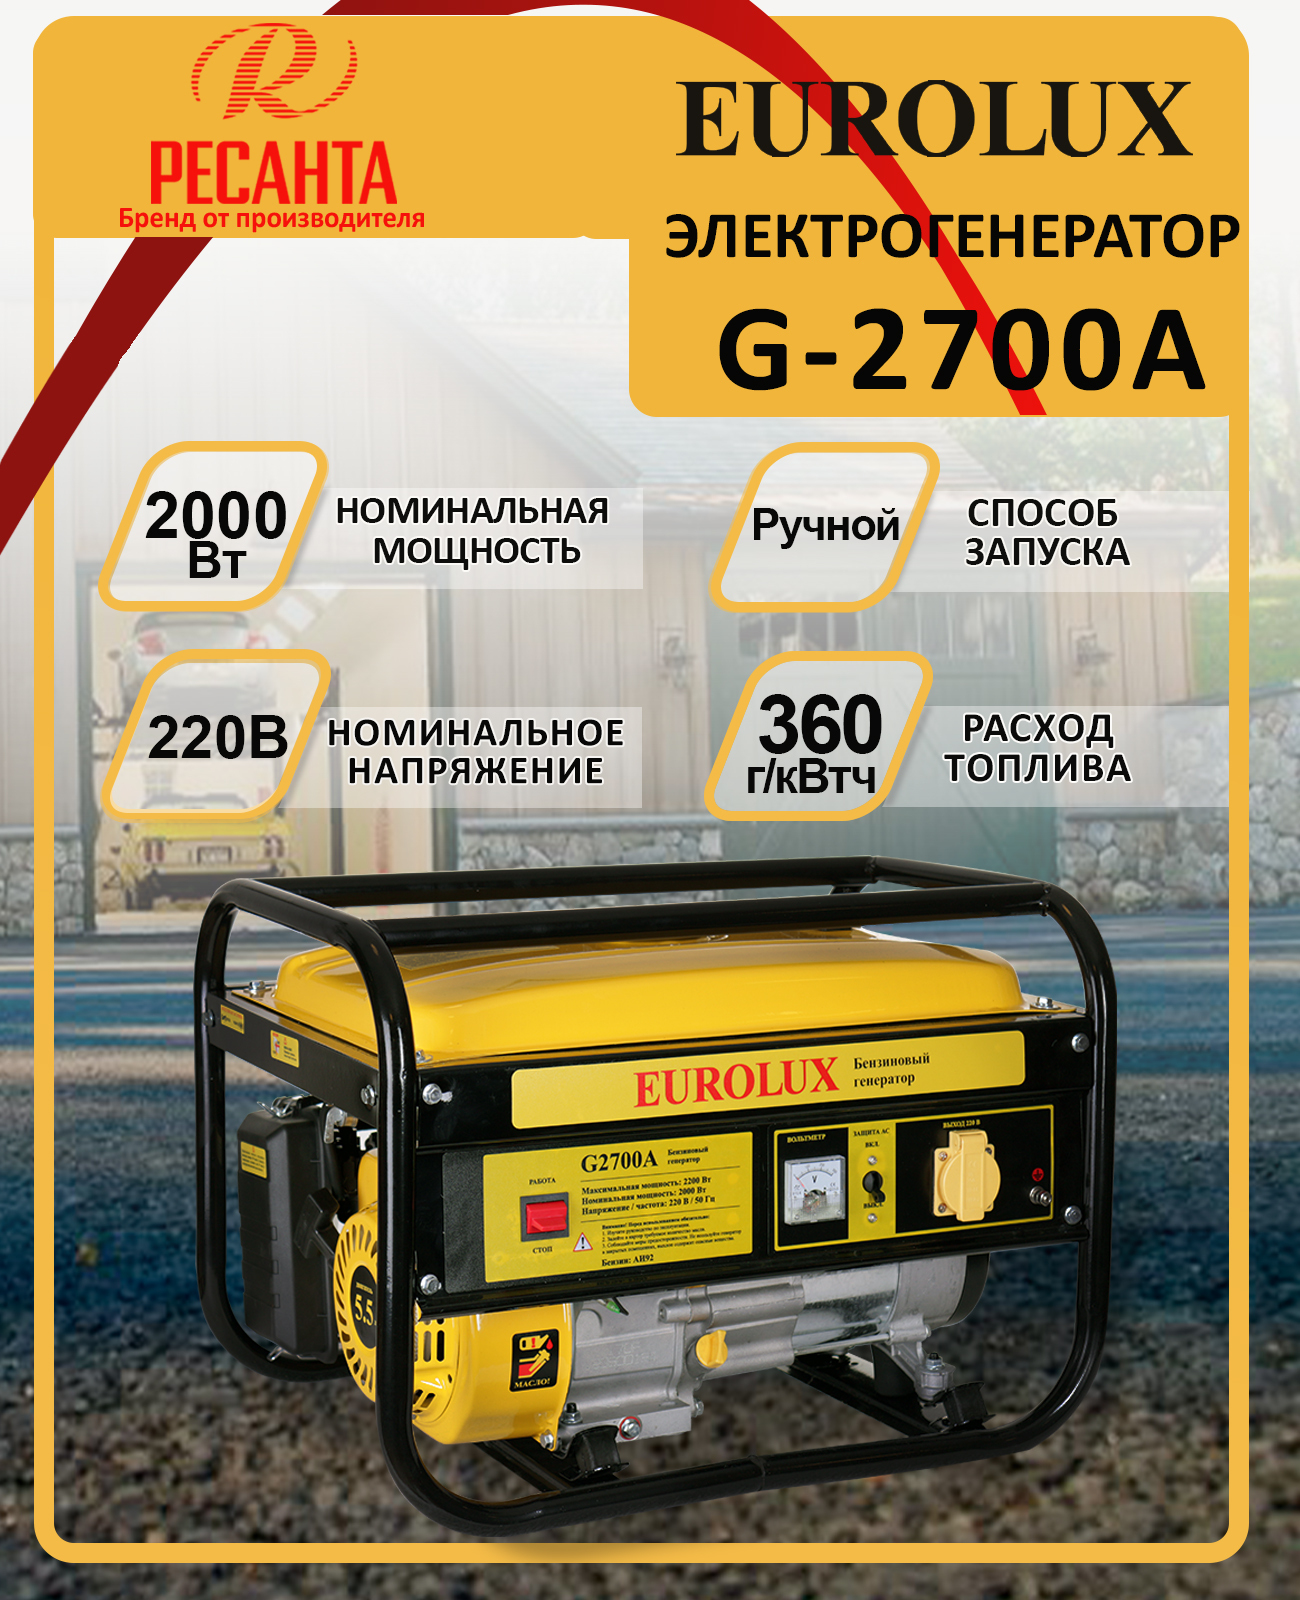 Eurolux g6500a. Электрогенератор g6500a Eurolux. Электрогенератор Eurolux g2700a. Eurolux лого. Цены на бензогенераторы на 6500.